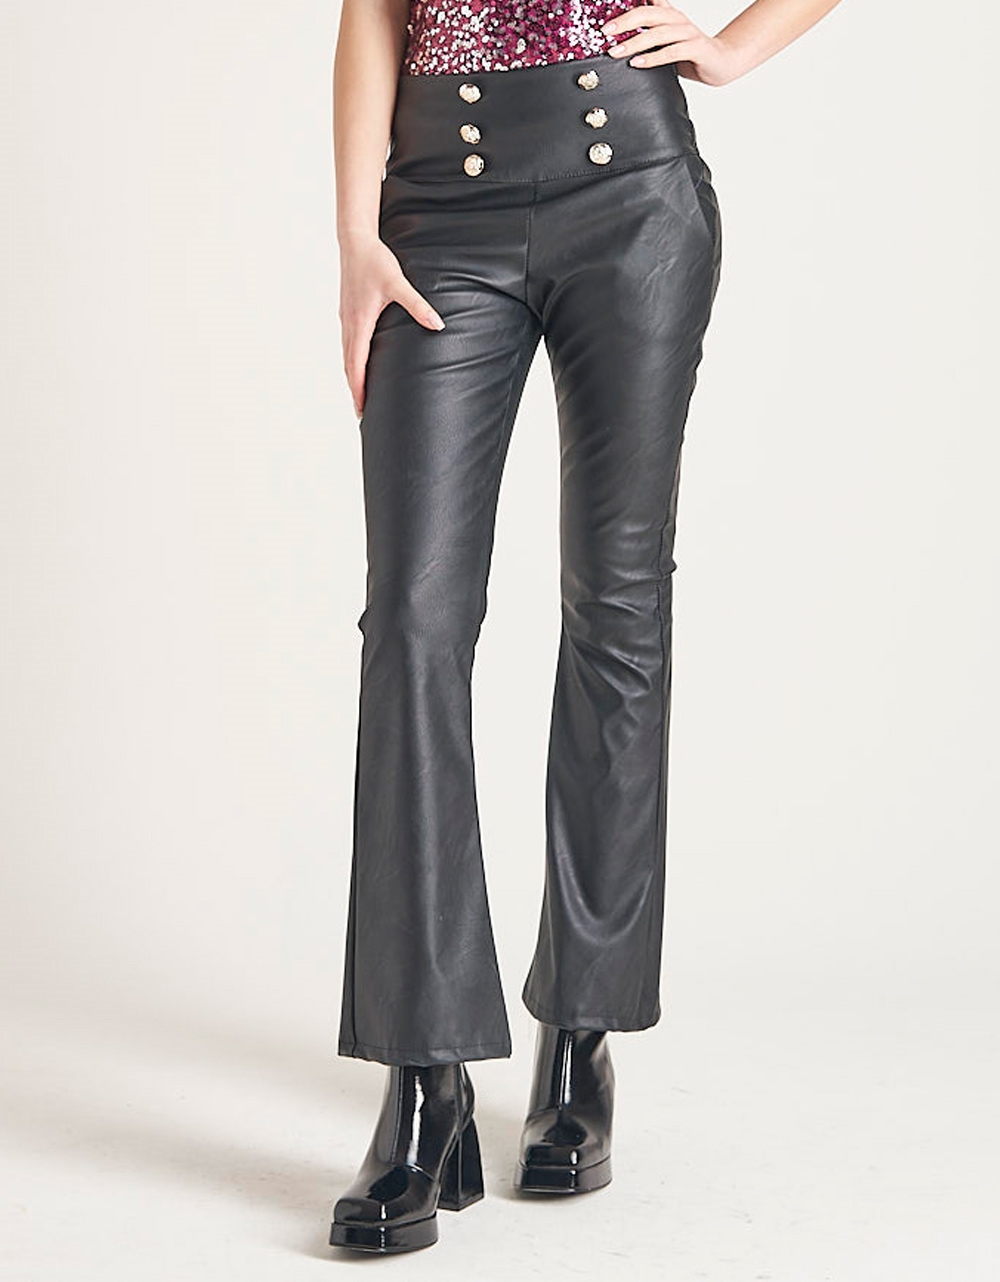 Εικόνα από Leather look παντελόνι καμπάνα με διακοσμητικά κουμπιά Μαύρο